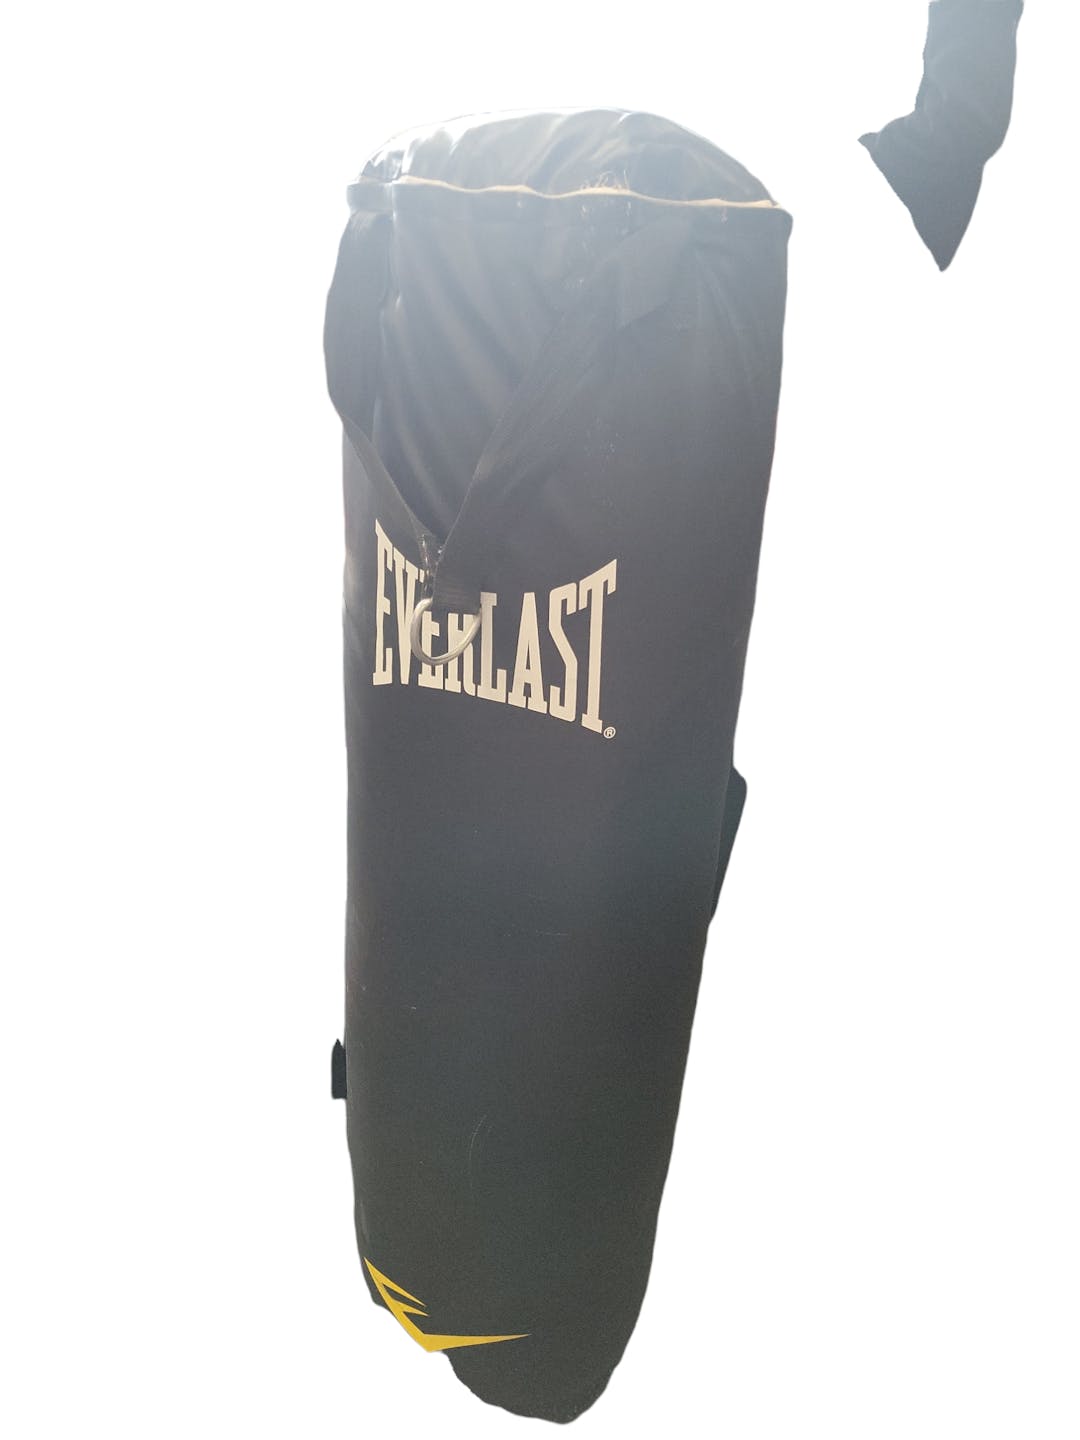 Everlast 7502LXL MMA Heavy Bag Gloves L/XL NEW | eBay